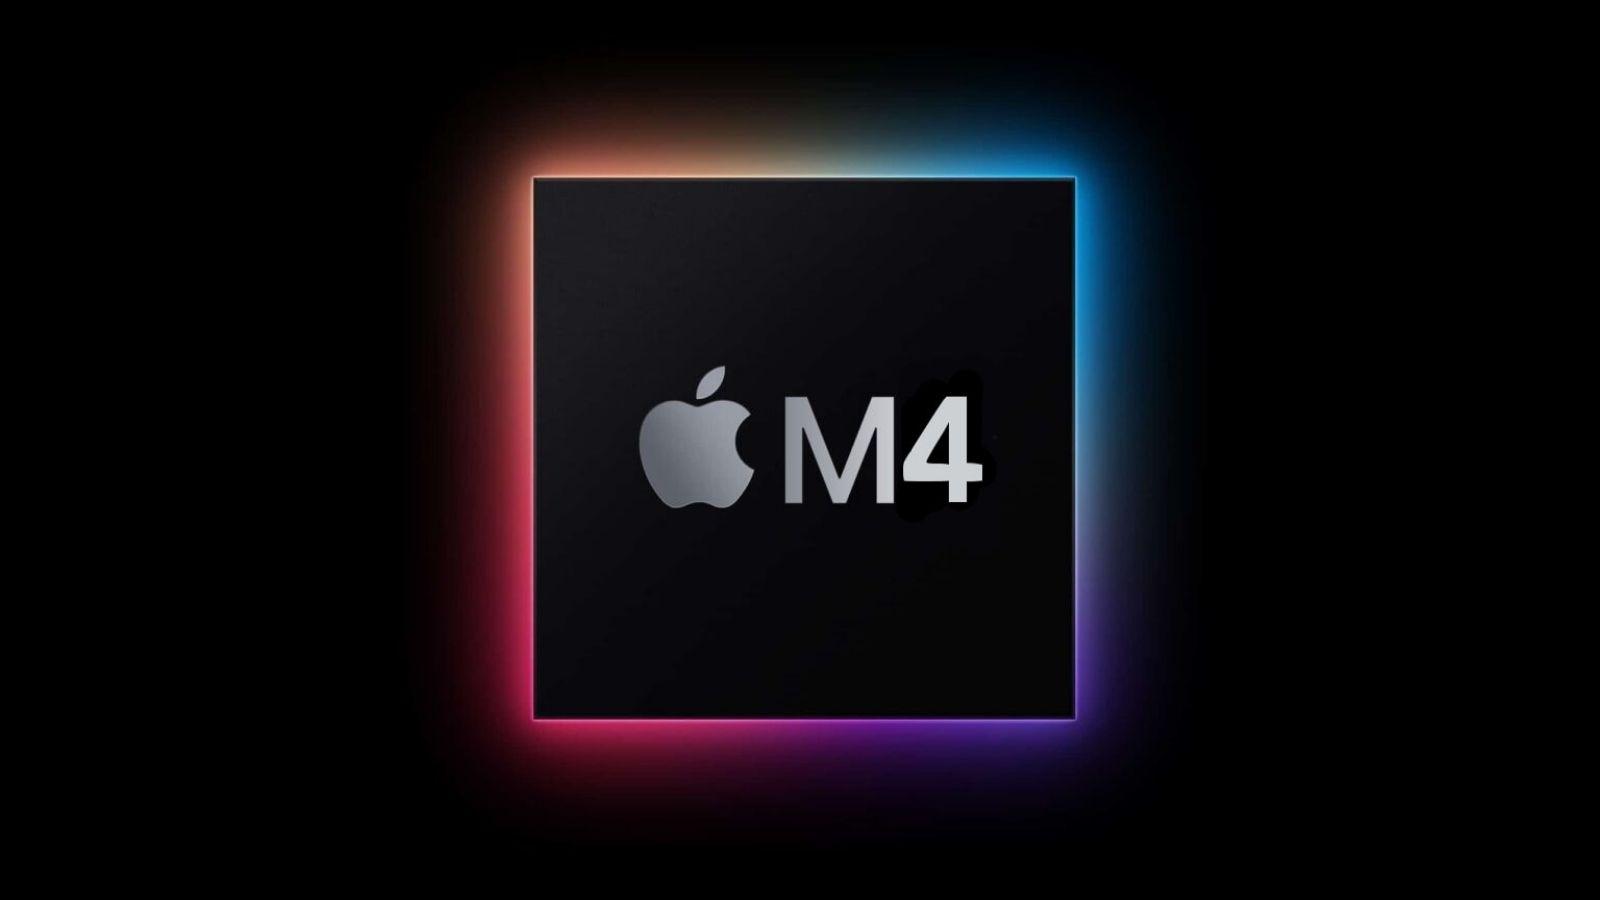 Apple firması, M4 işlemciye sahip bilgisayarlarını ne zaman piyasaya sürmeyi planlıyor? Yol haritası ortaya çıkmış gibi görünüyor.